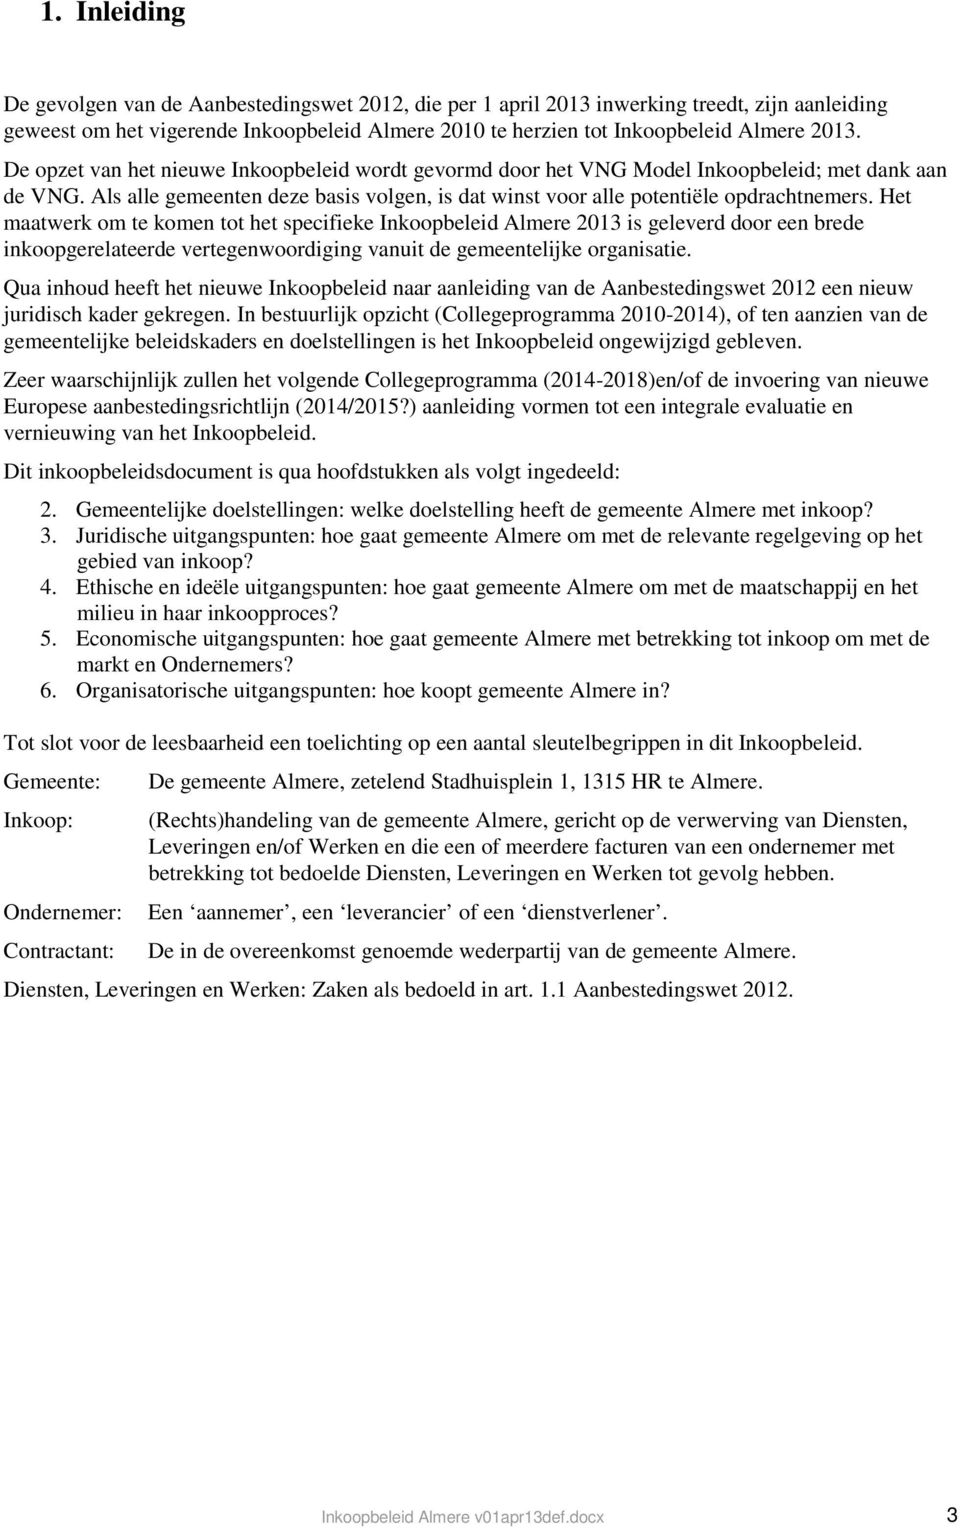 Het maatwerk om te komen tot het specifieke Inkoopbeleid Almere 2013 is geleverd door een brede inkoopgerelateerde vertegenwoordiging vanuit de gemeentelijke organisatie.